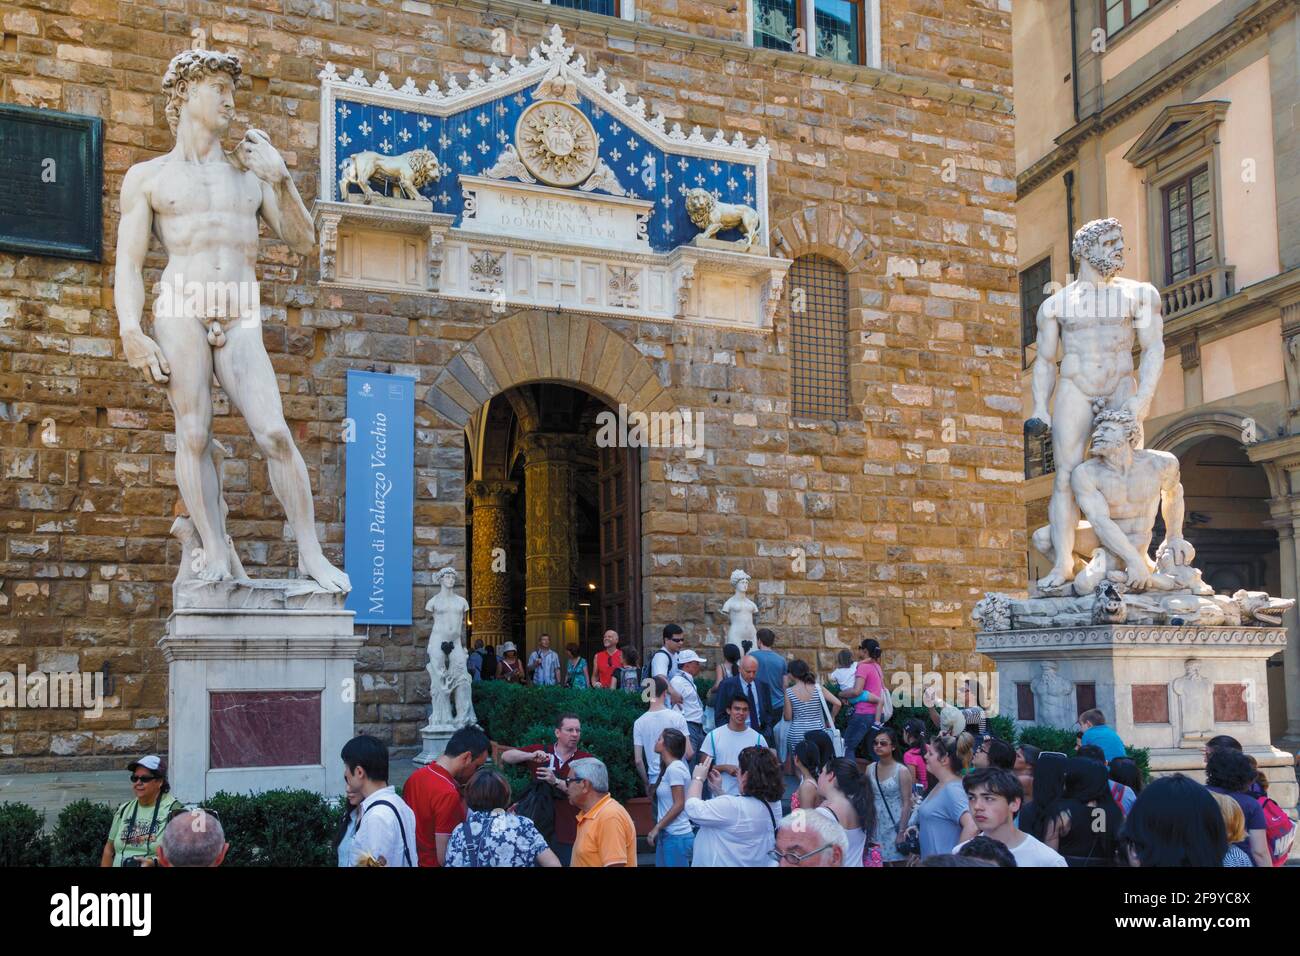 Florence, province de Florence, Toscane, Italie. Entrée au Palazzo Vecchio, flanquée d'une copie du David de Michel-Ange et de l'Hercu de Baccio Bandinelli Banque D'Images